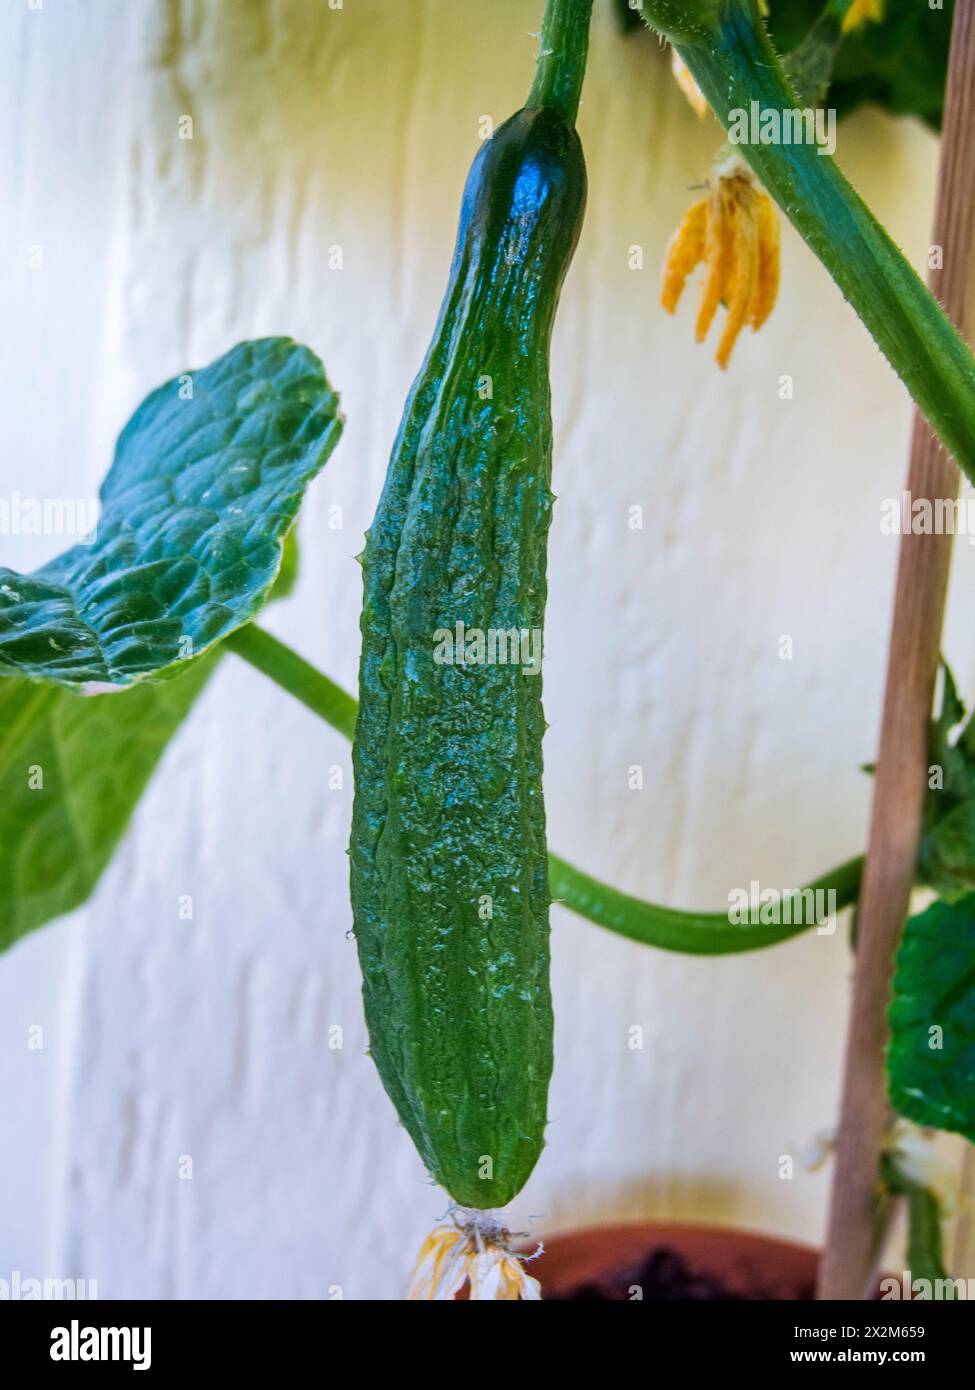 Nahansicht einer mittelreifen Schlangensalatgurke mit vertrockneter Blüte am Stängel einer Topfpflanze. Stock Photo